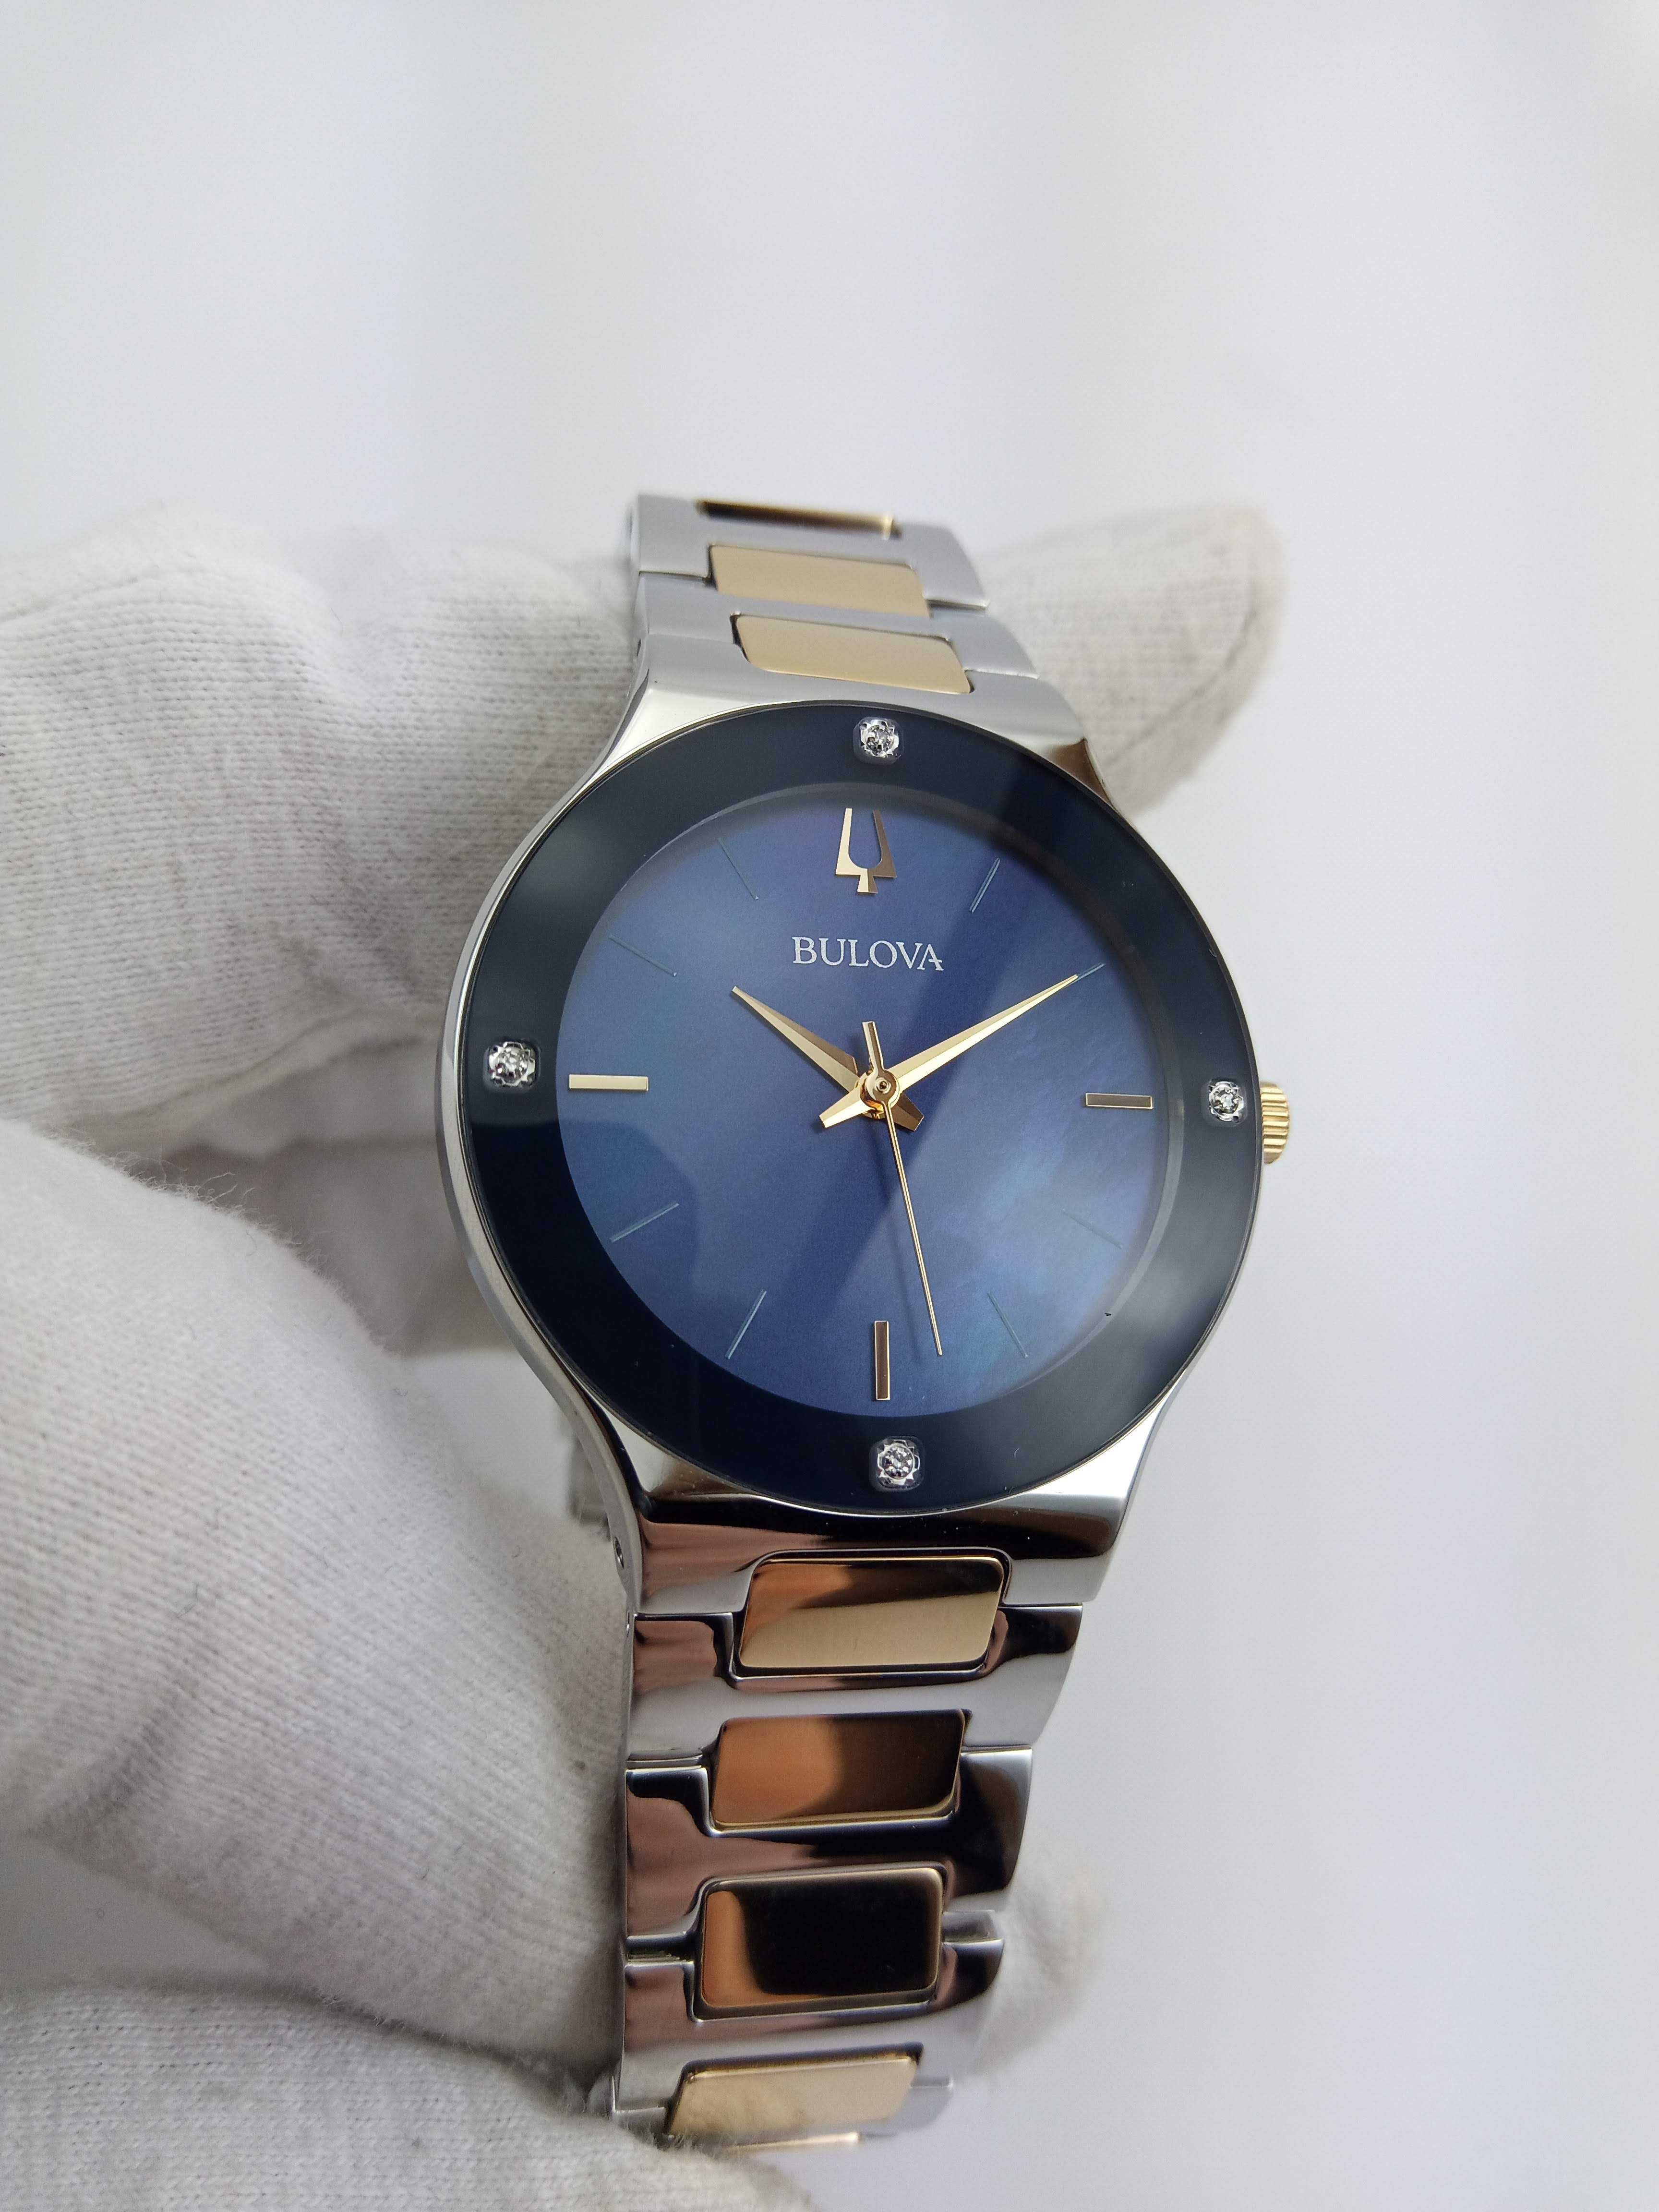 Шикарные женские часы с бриллиантами Bulova 98R273 в подарок девушке